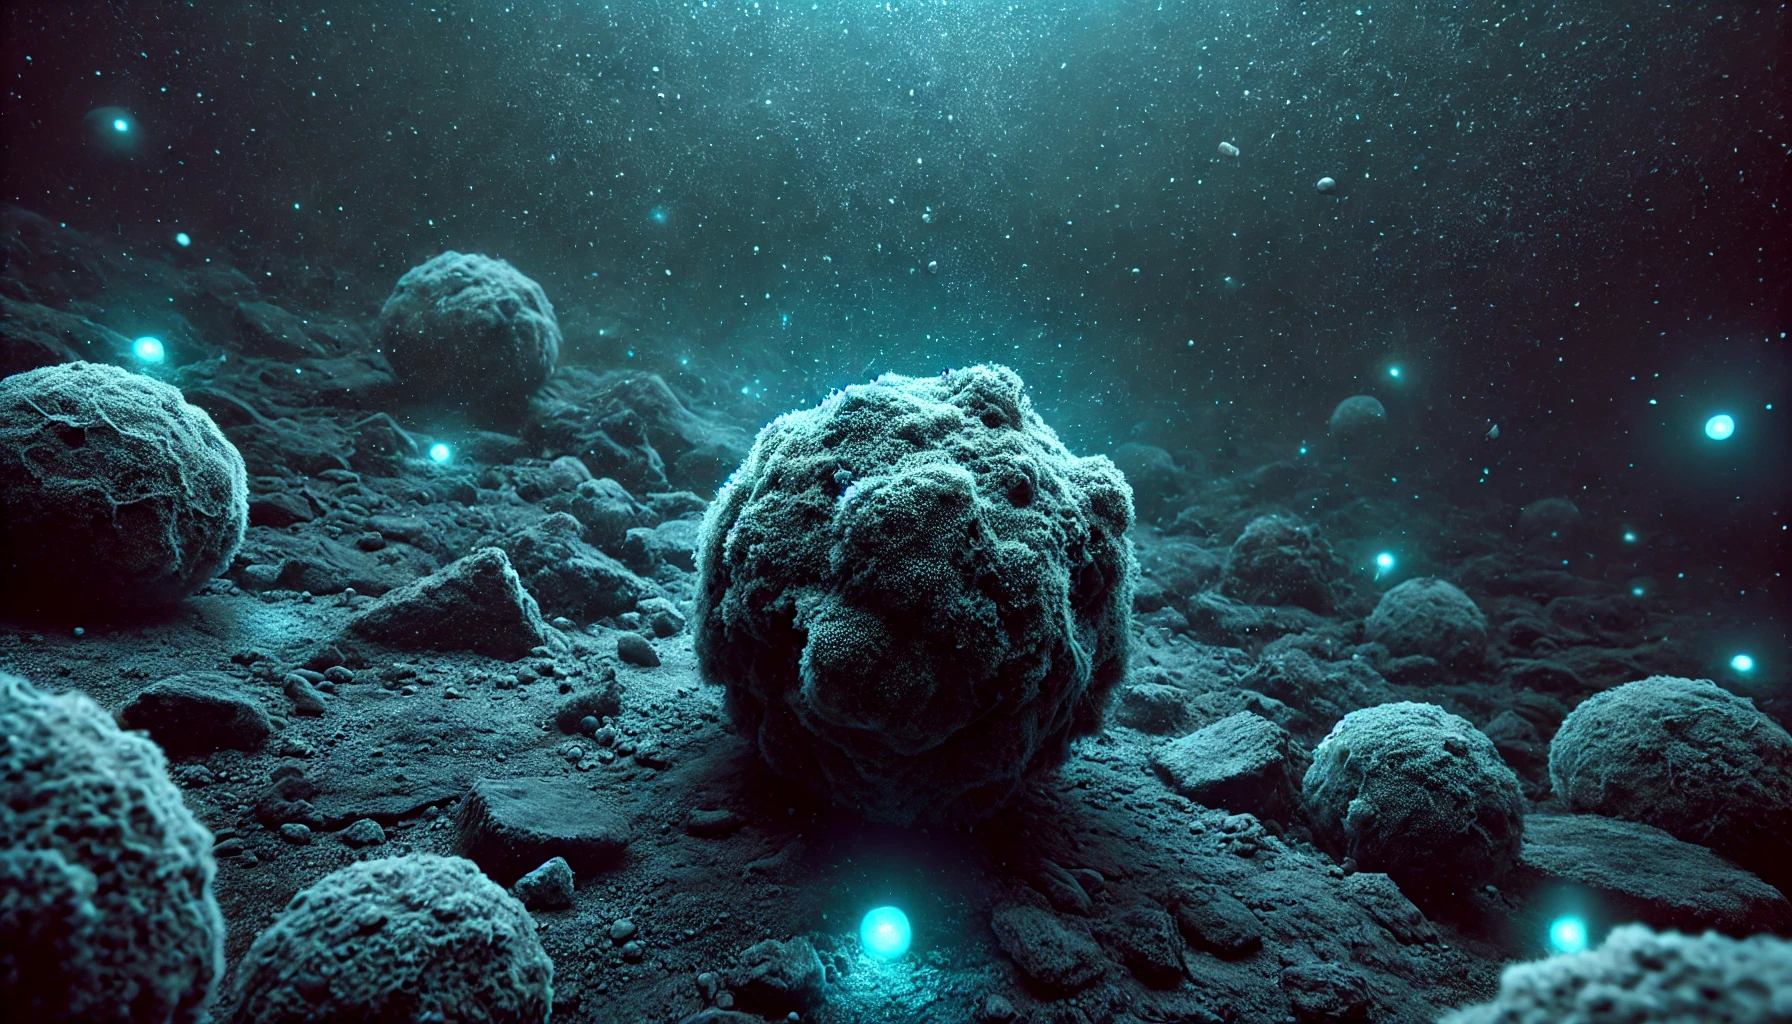 Noduli metallici producono ossigeno in fondo agli oceani